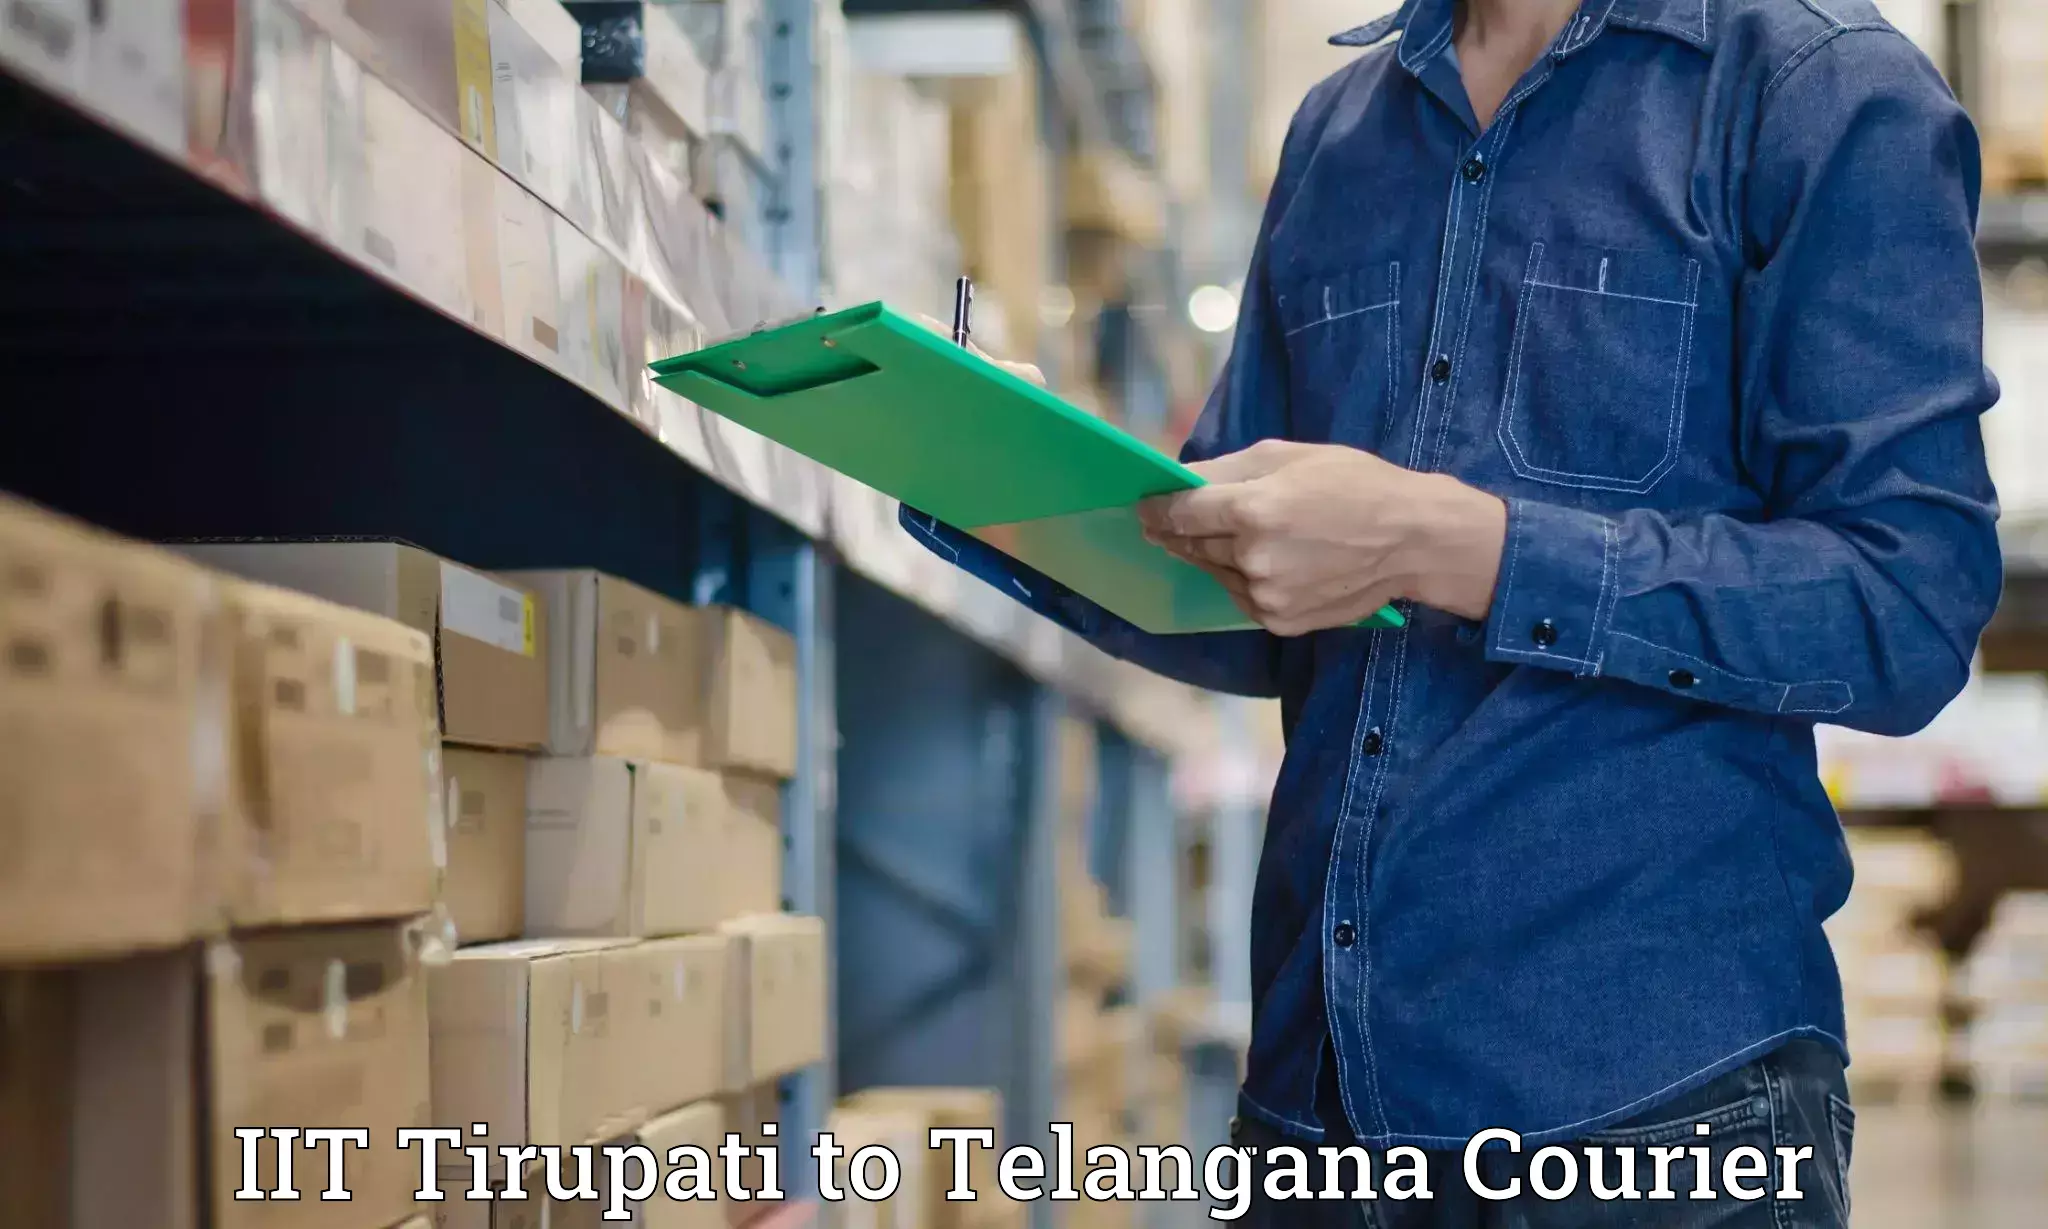 Premium courier services IIT Tirupati to Netrang